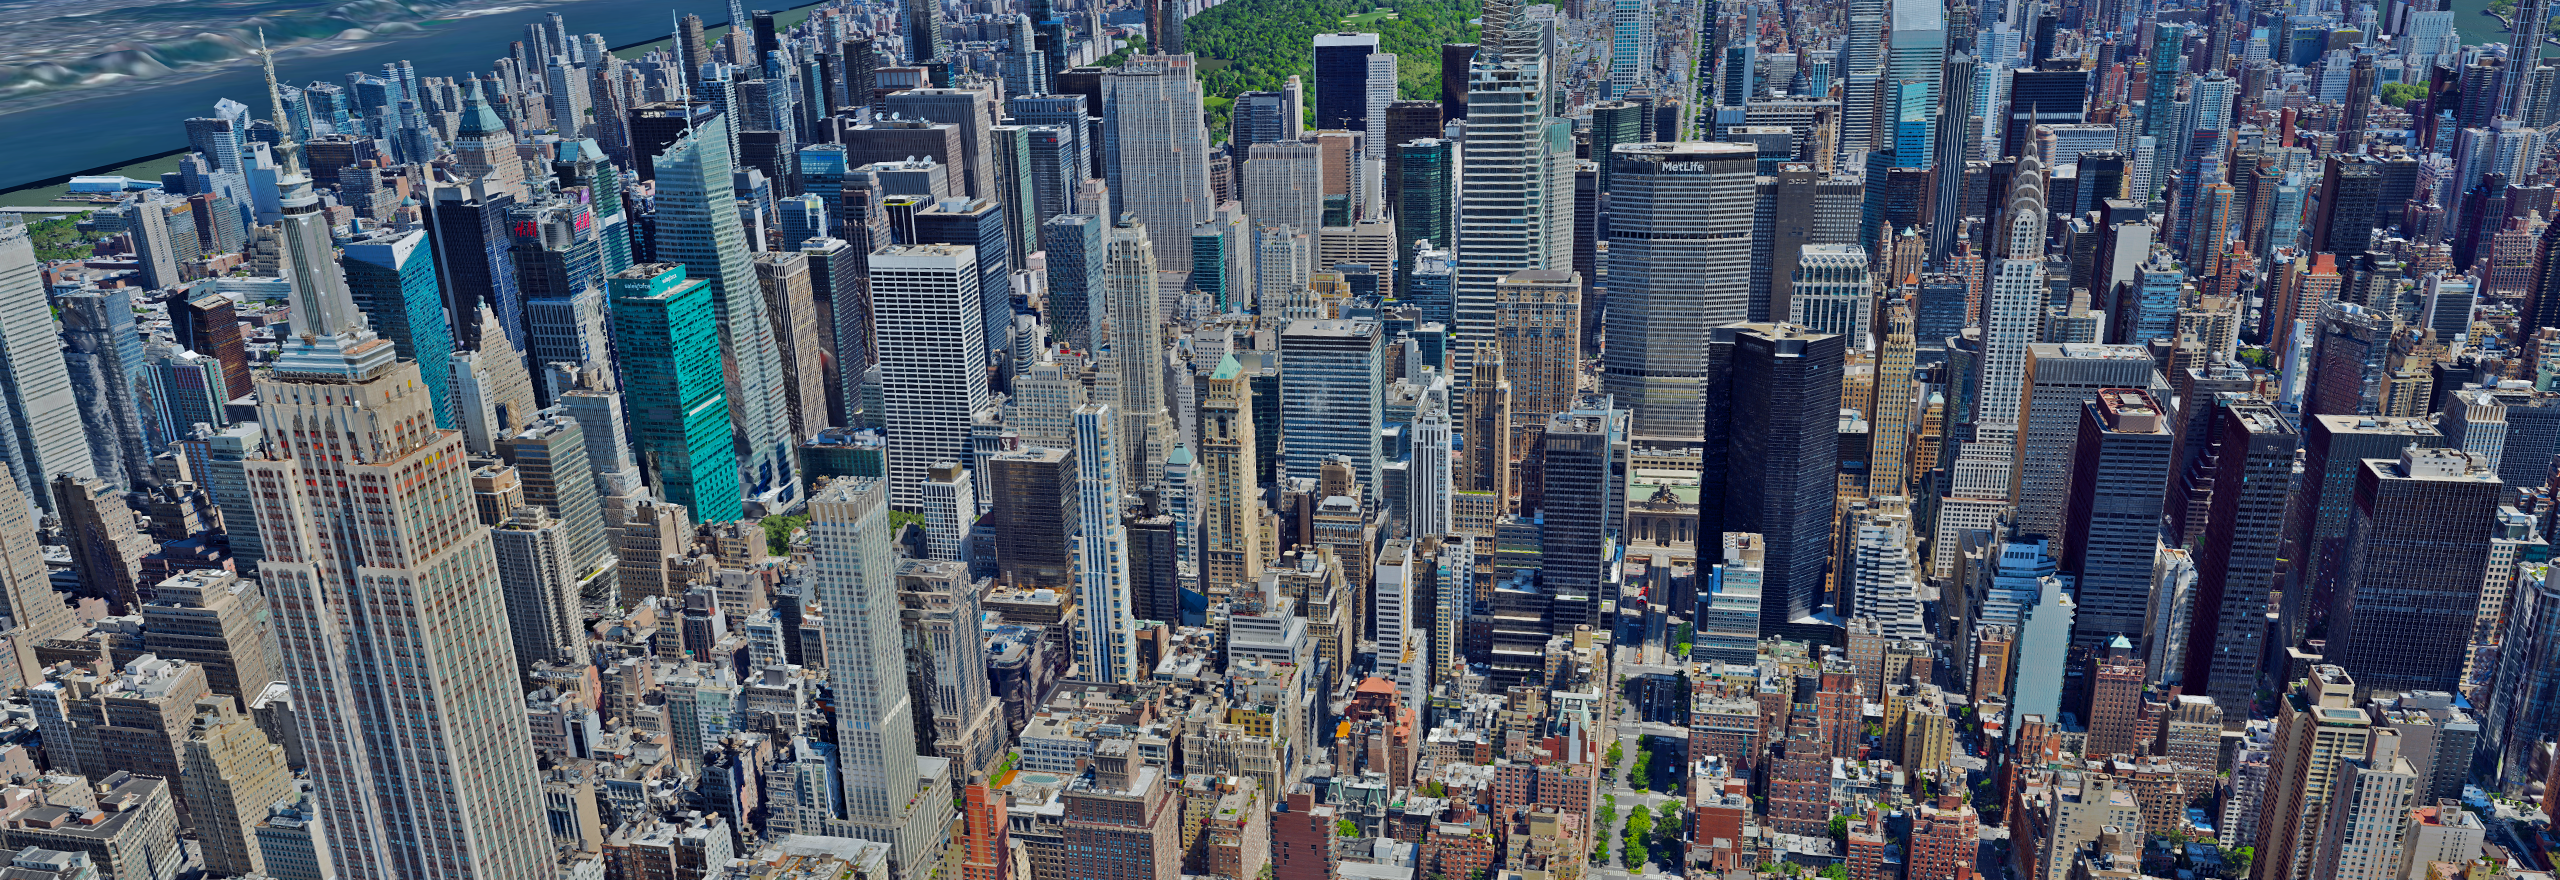 Sobreposição digital de uma grande cidade vista de cima